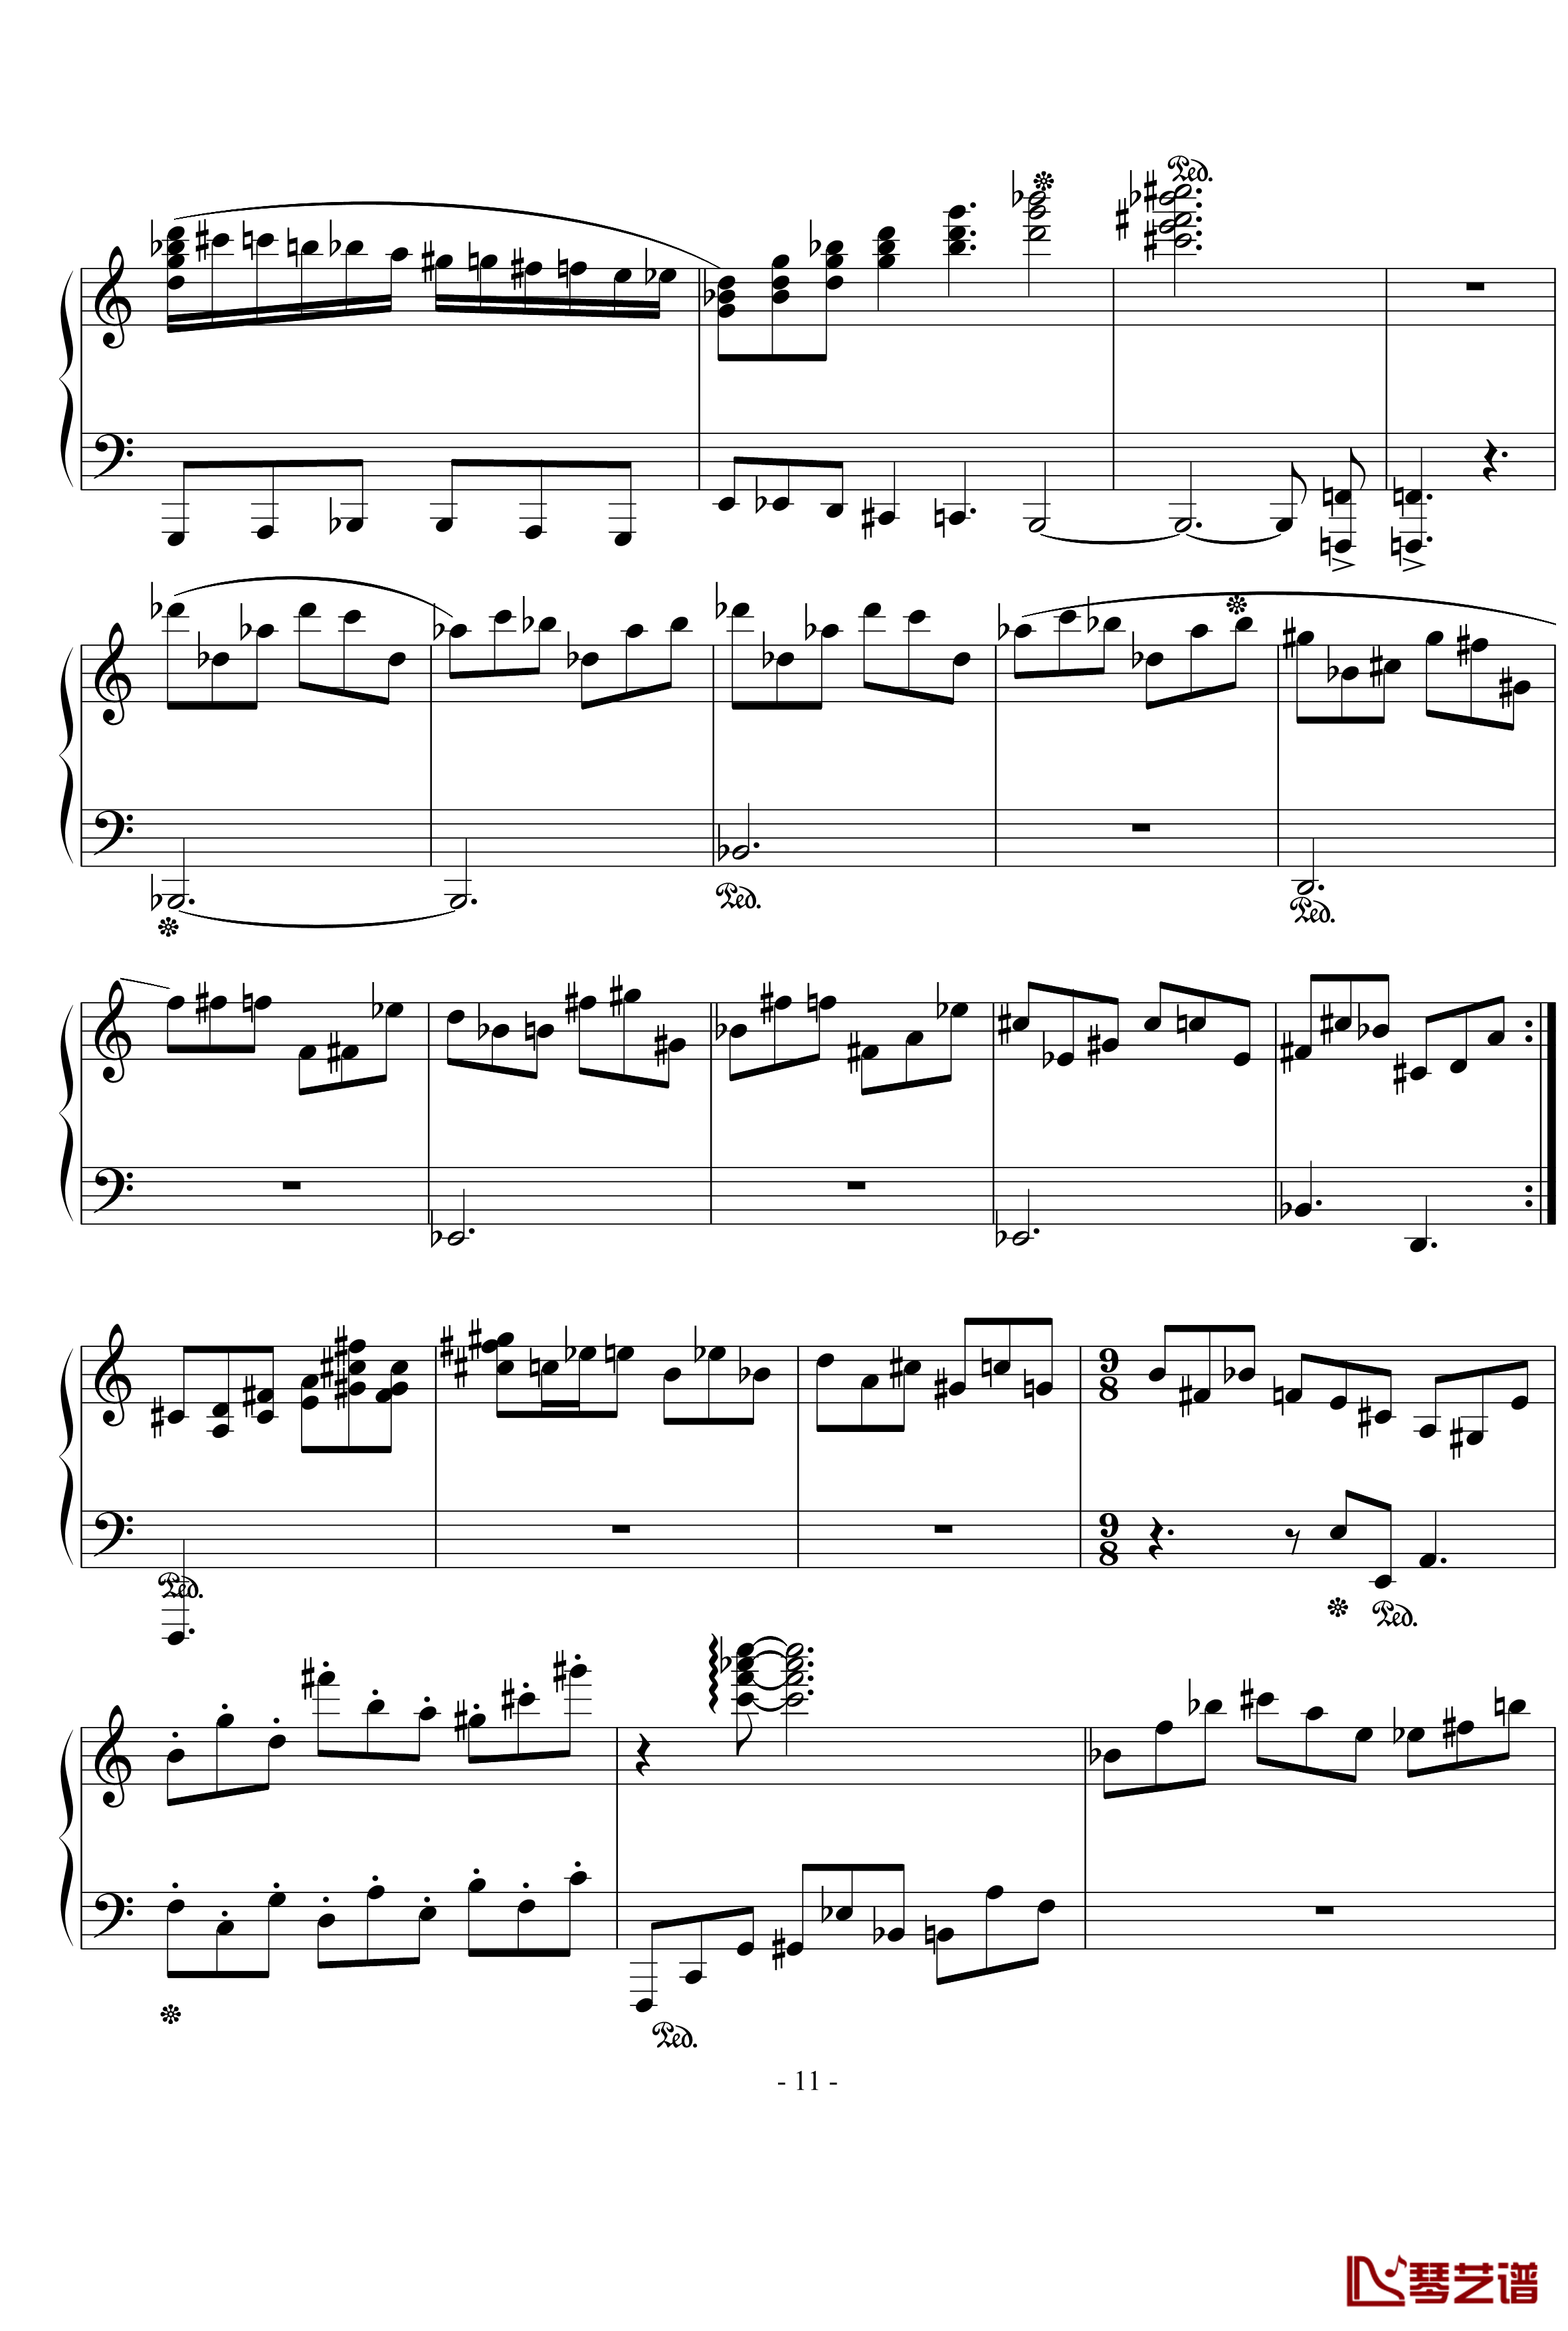 浪漫主义音乐的传统钢琴谱-幻想曲-D大调-流行追梦人11